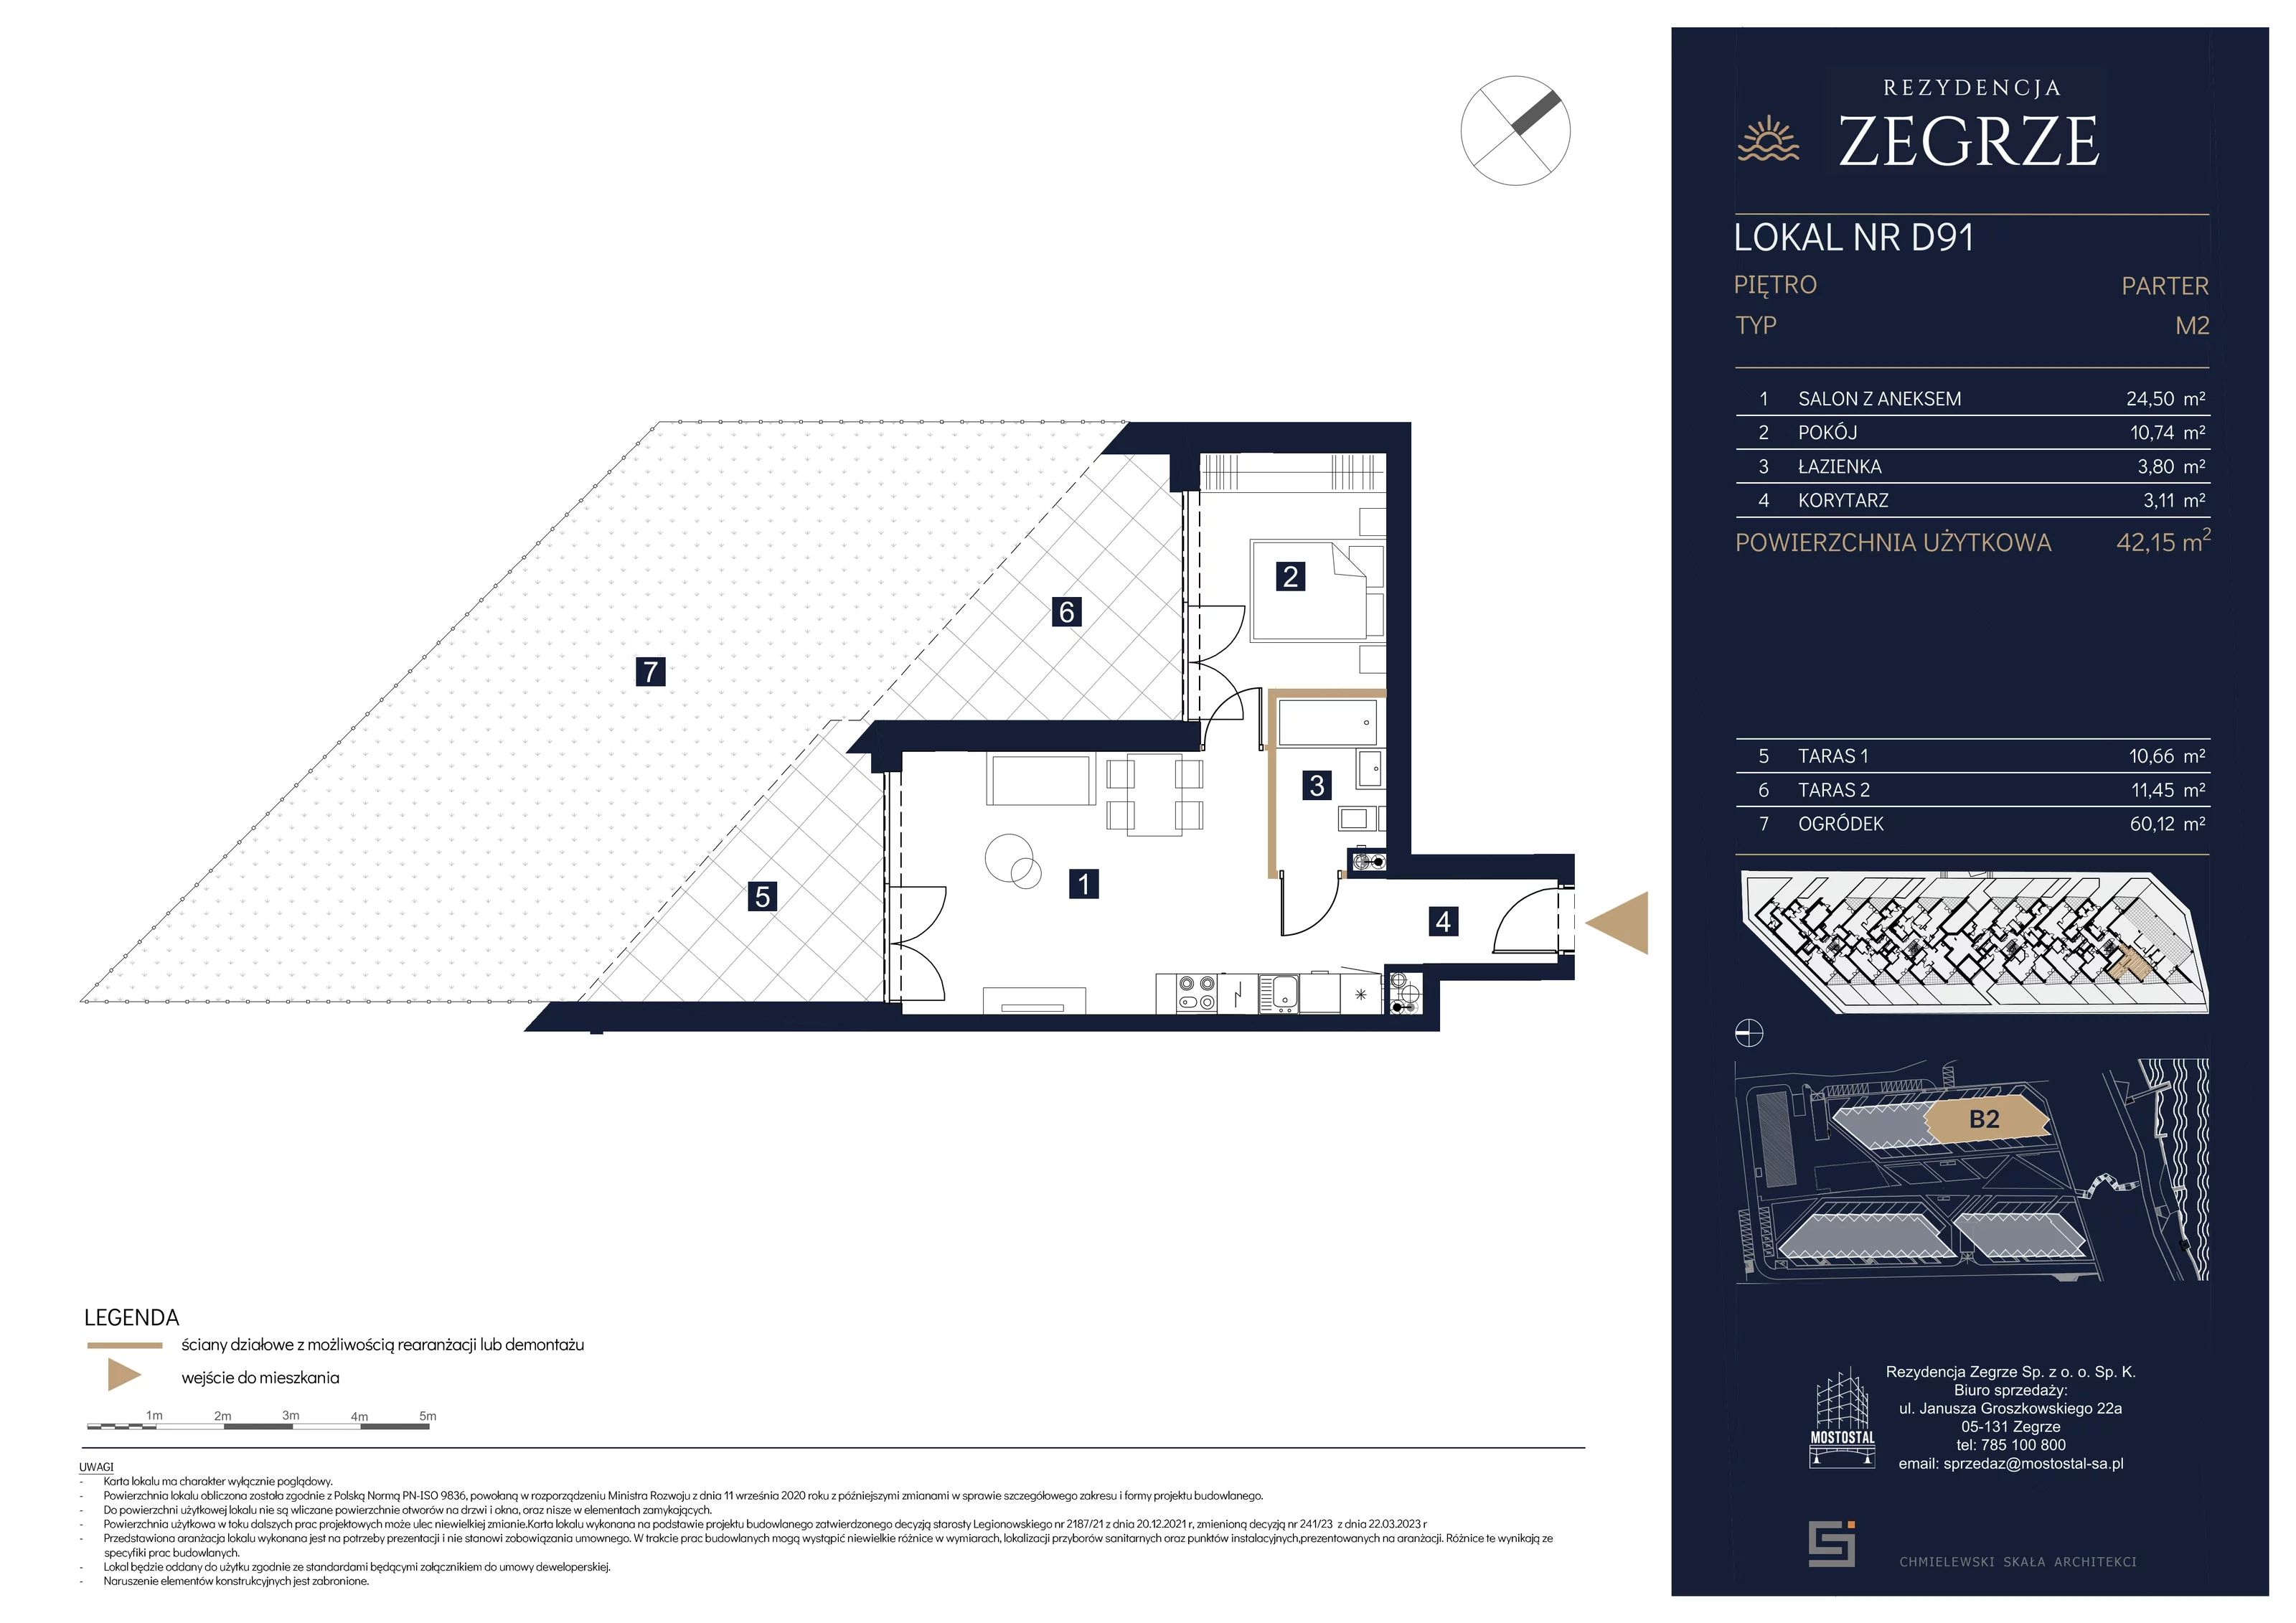 Mieszkanie 42,15 m², parter, oferta nr B2.1.D.91, Rezydencja Zegrze II, Zegrze, ul. Groszkowskiego 22A